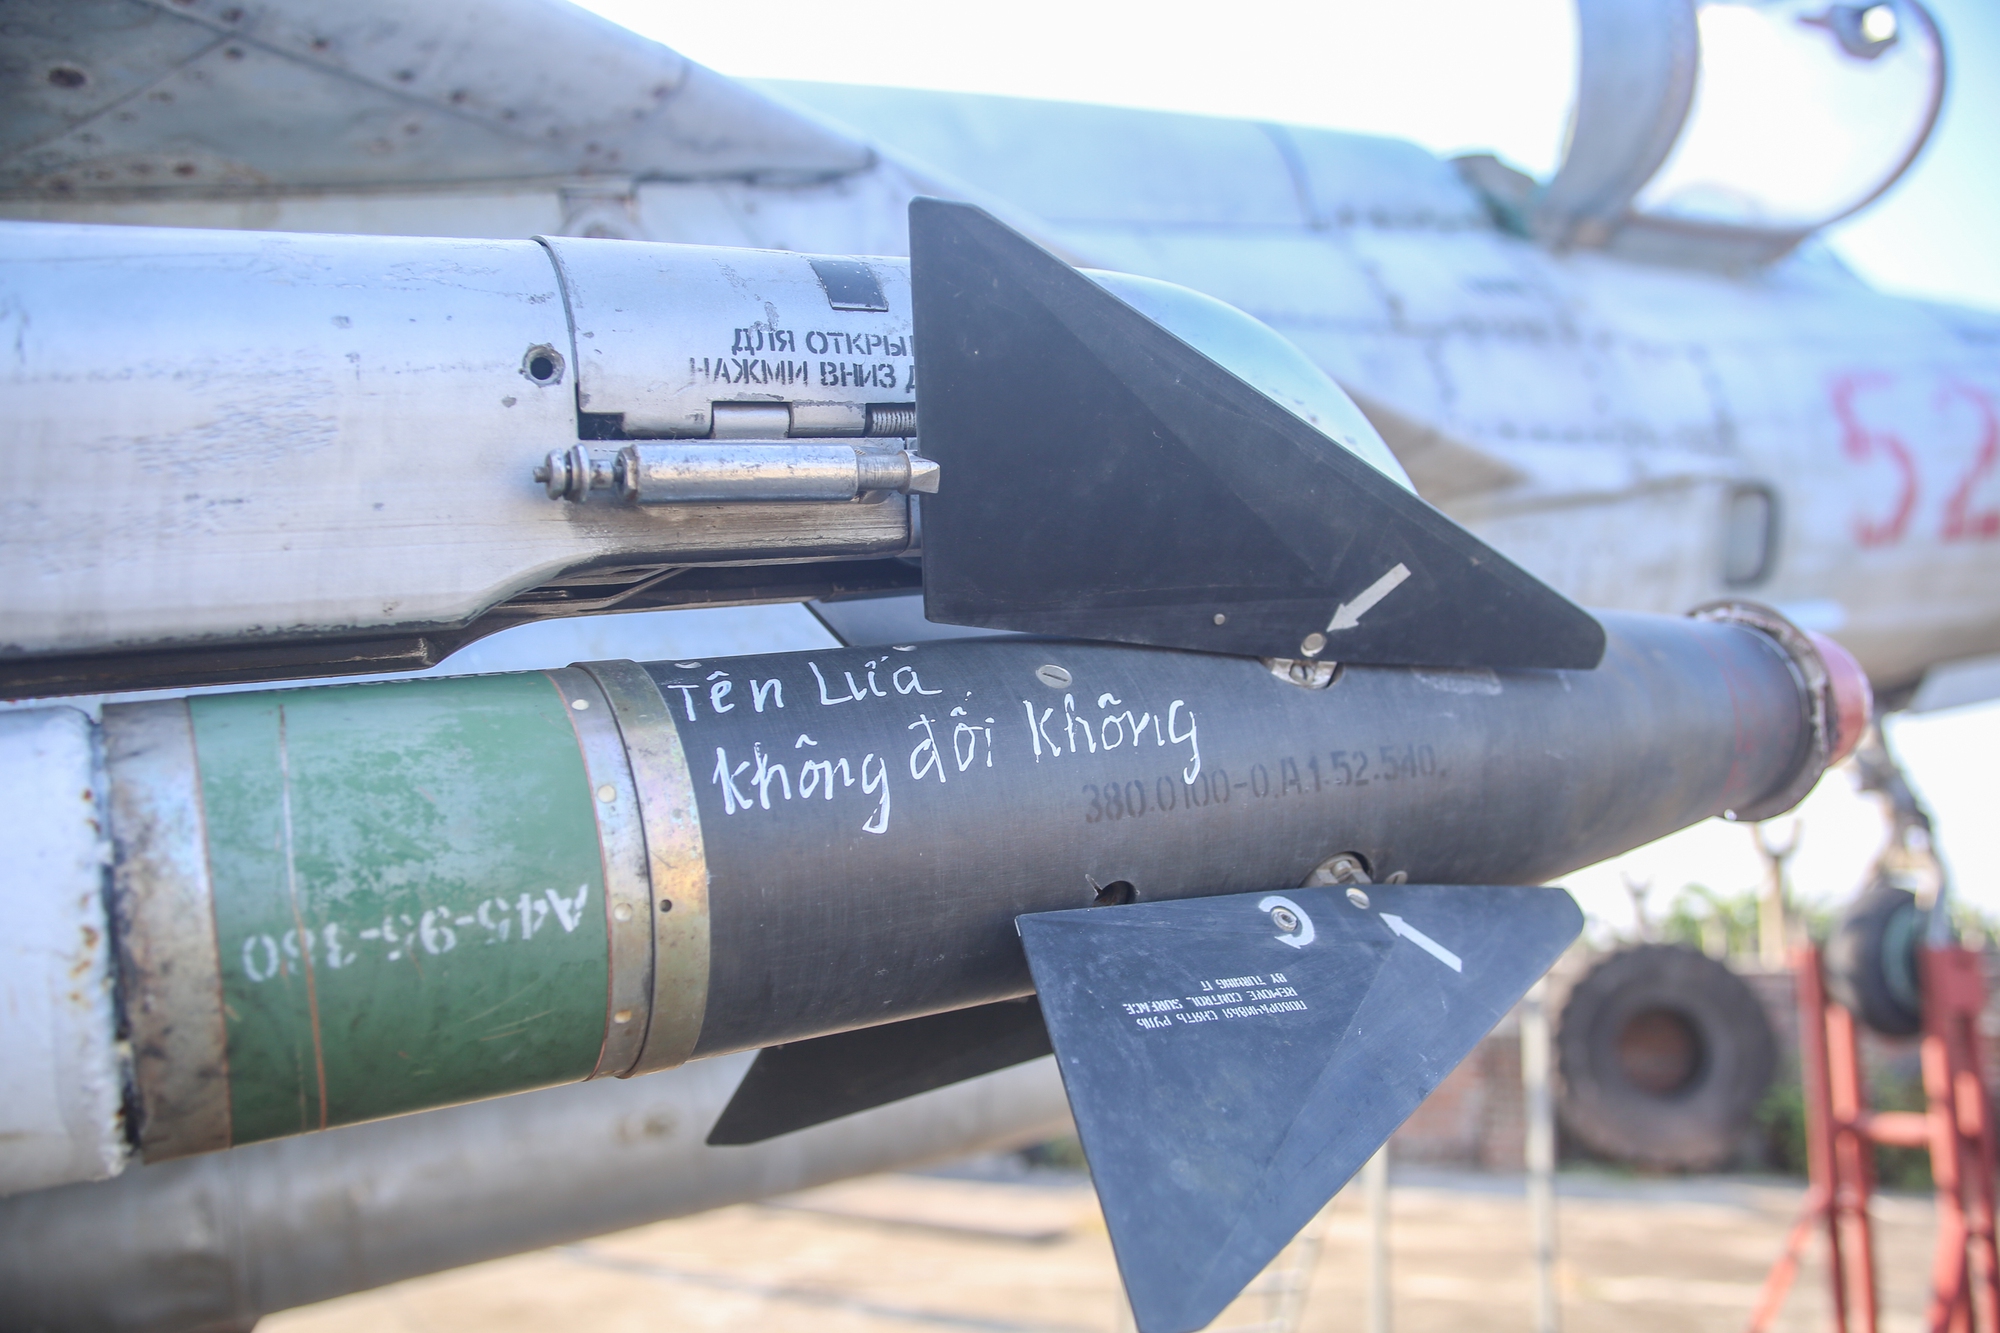 Chiêm ngưỡng bảo tàng tư nhân máy bay, tên lửa lớn nhất Ninh Bình - Ảnh 10.